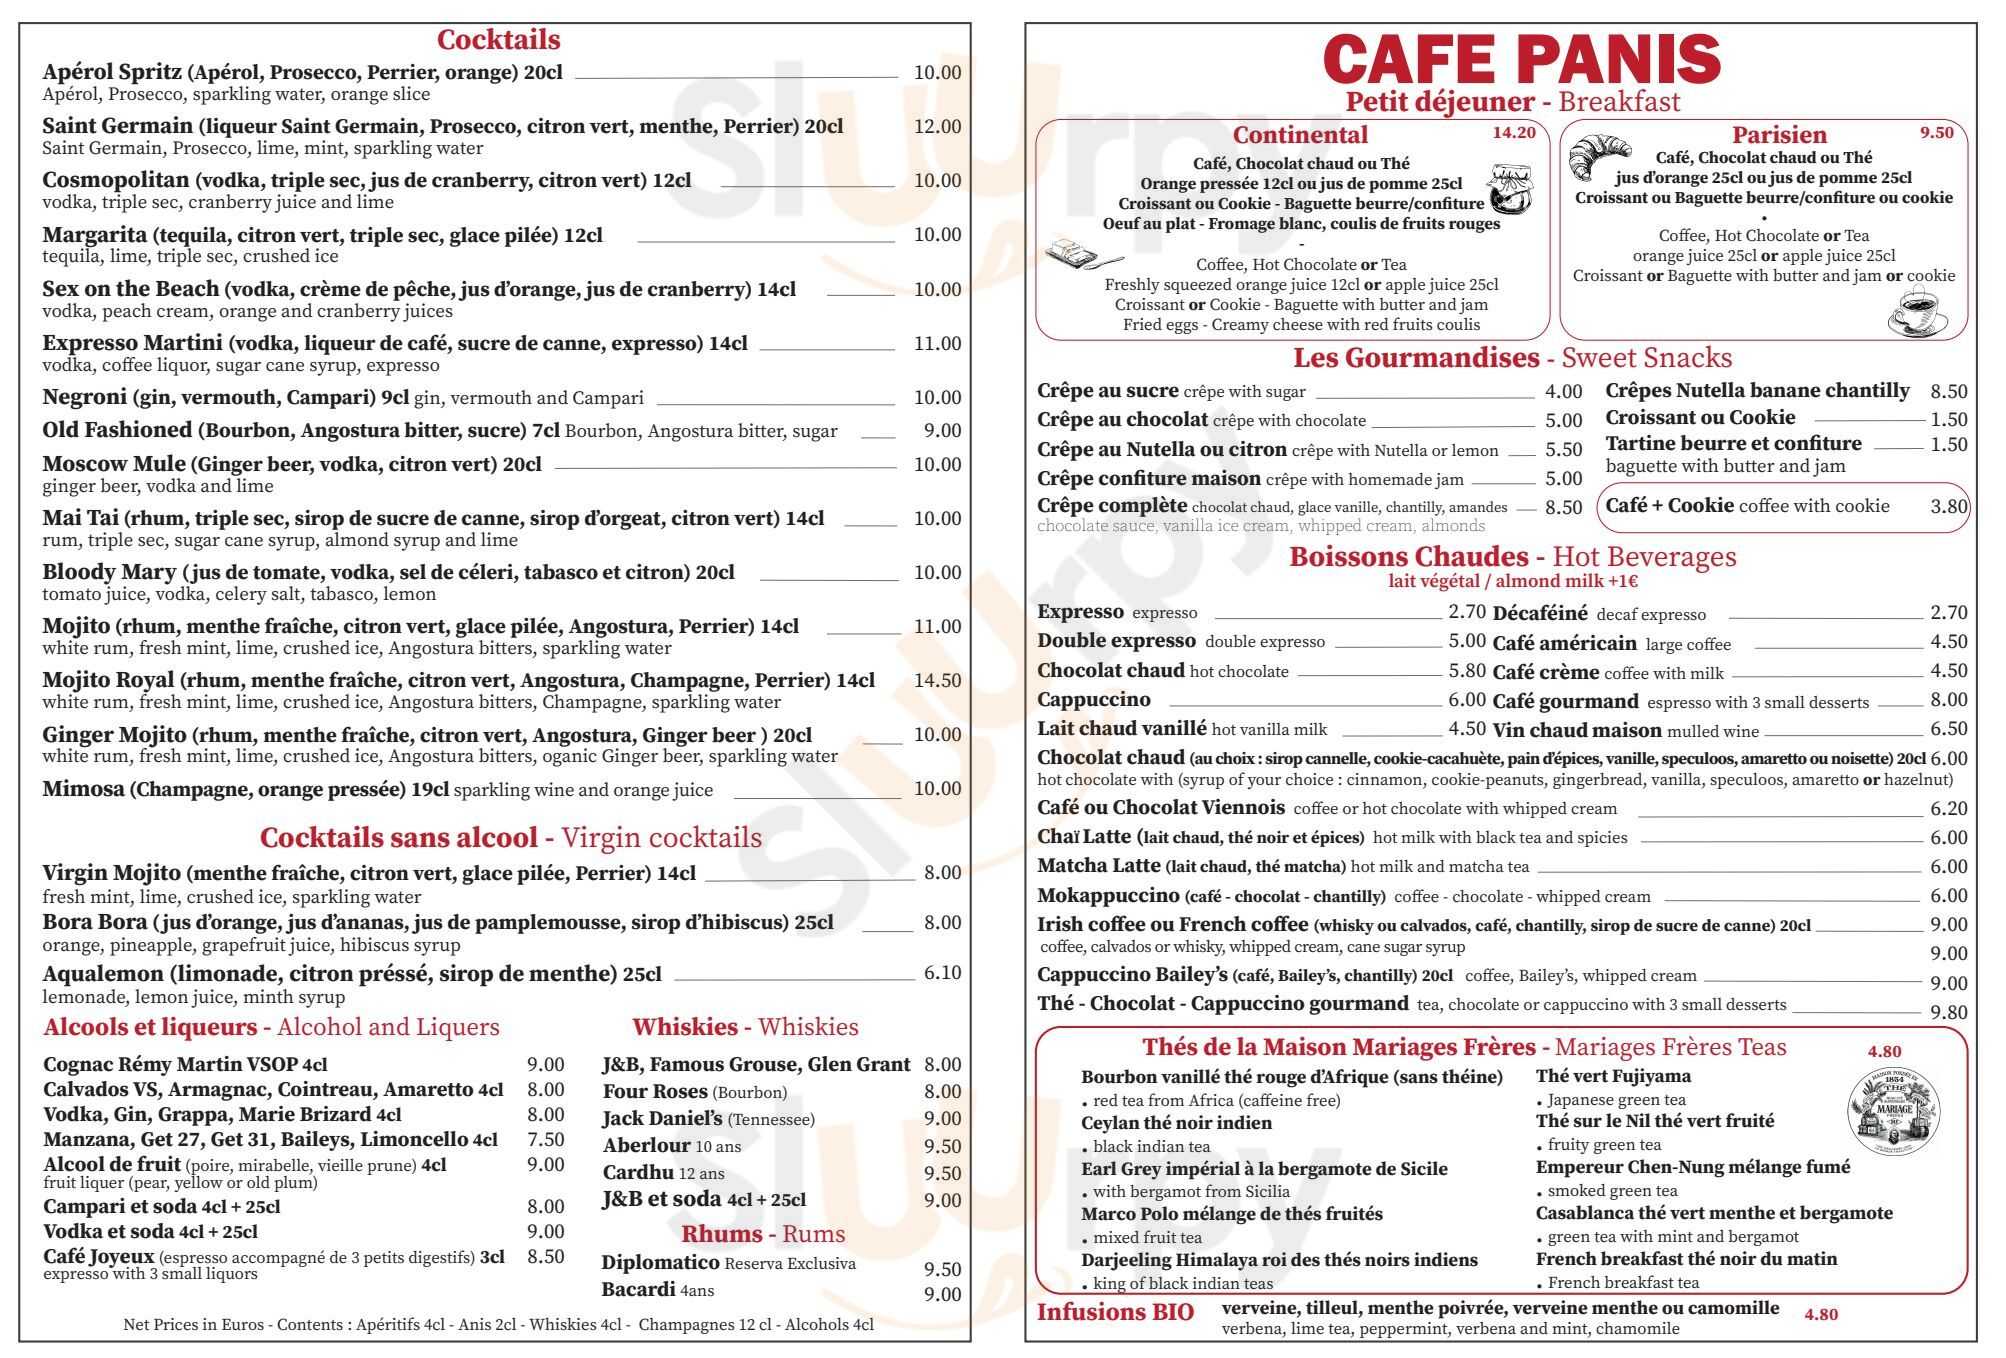 Café Panis Paris Menu - 1